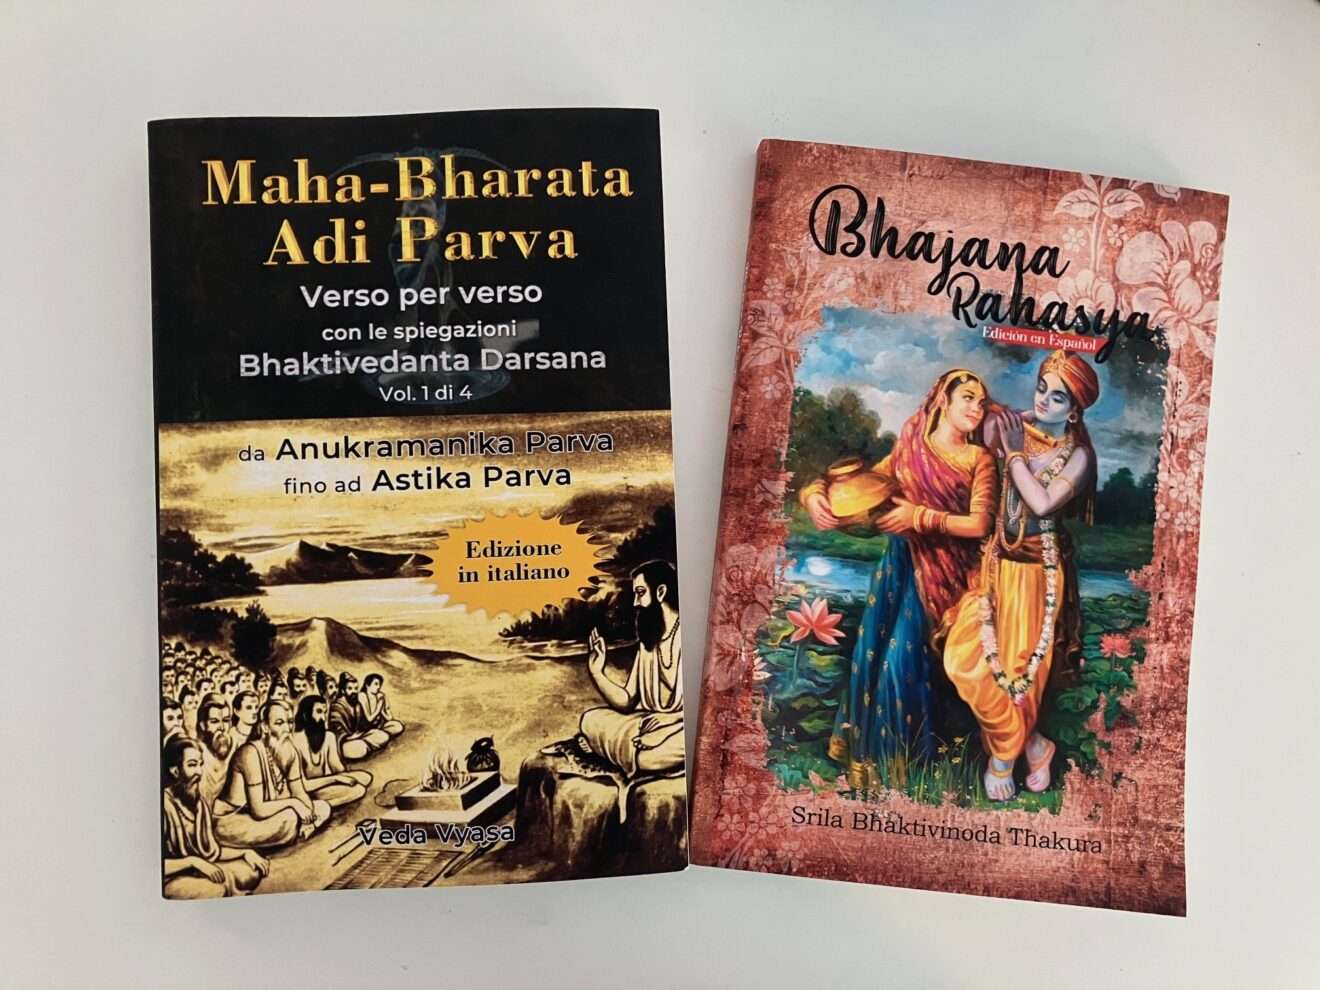 Maha-bharata (Serie in Italiano), progetto 100.000 versi - Bhajana Rahasya (Libro en Español)